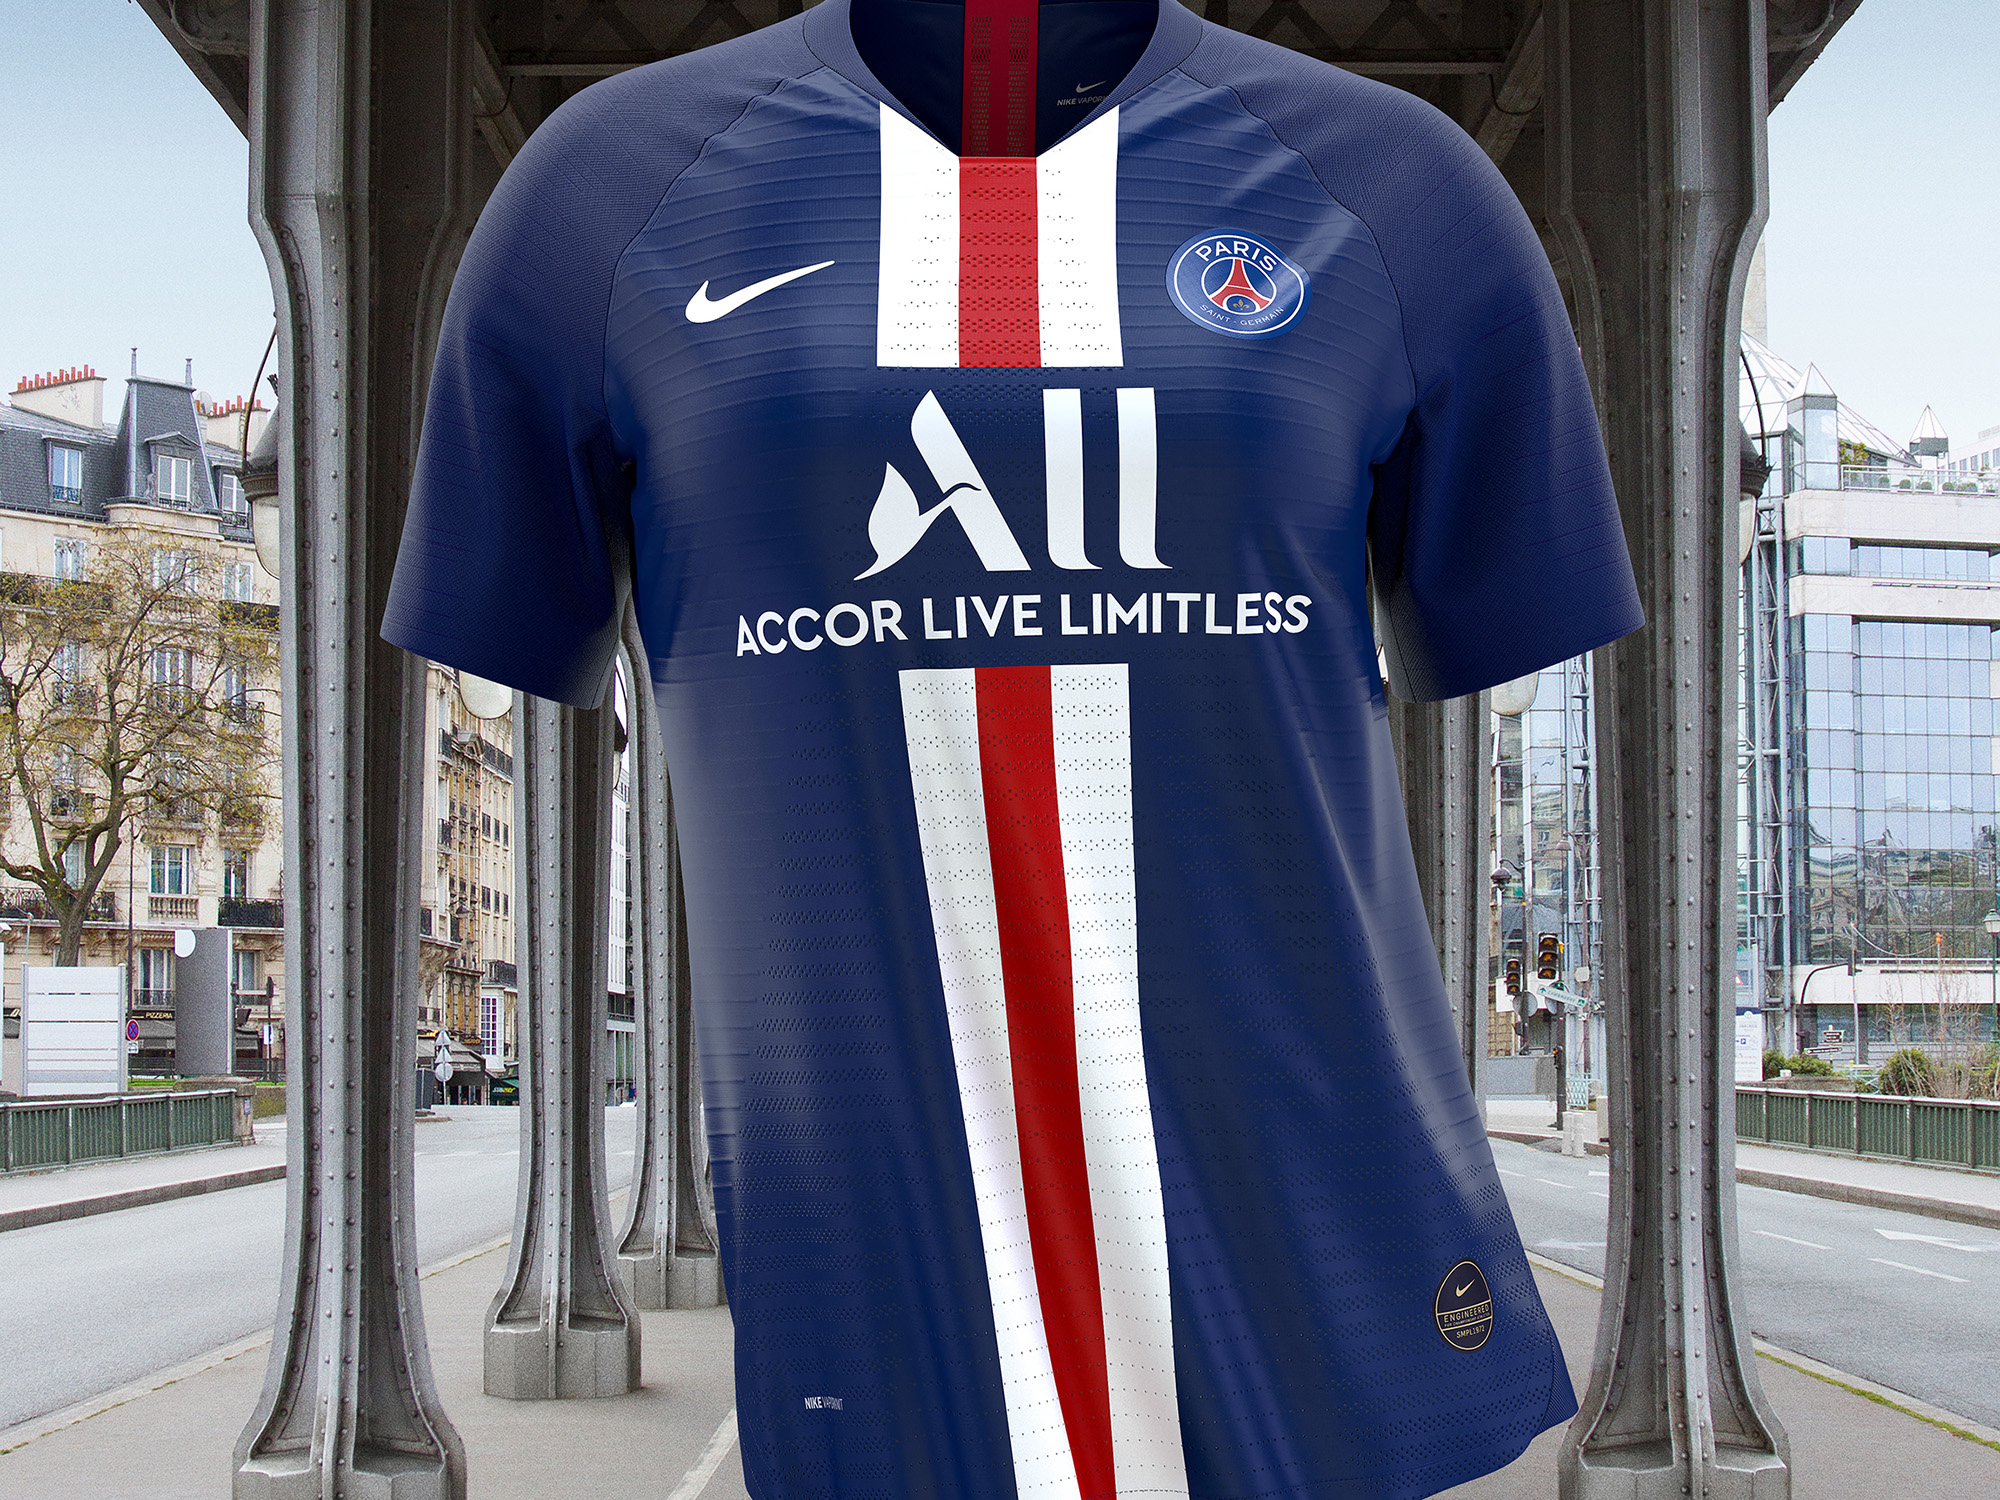 New Paris Saint-Germain home kit